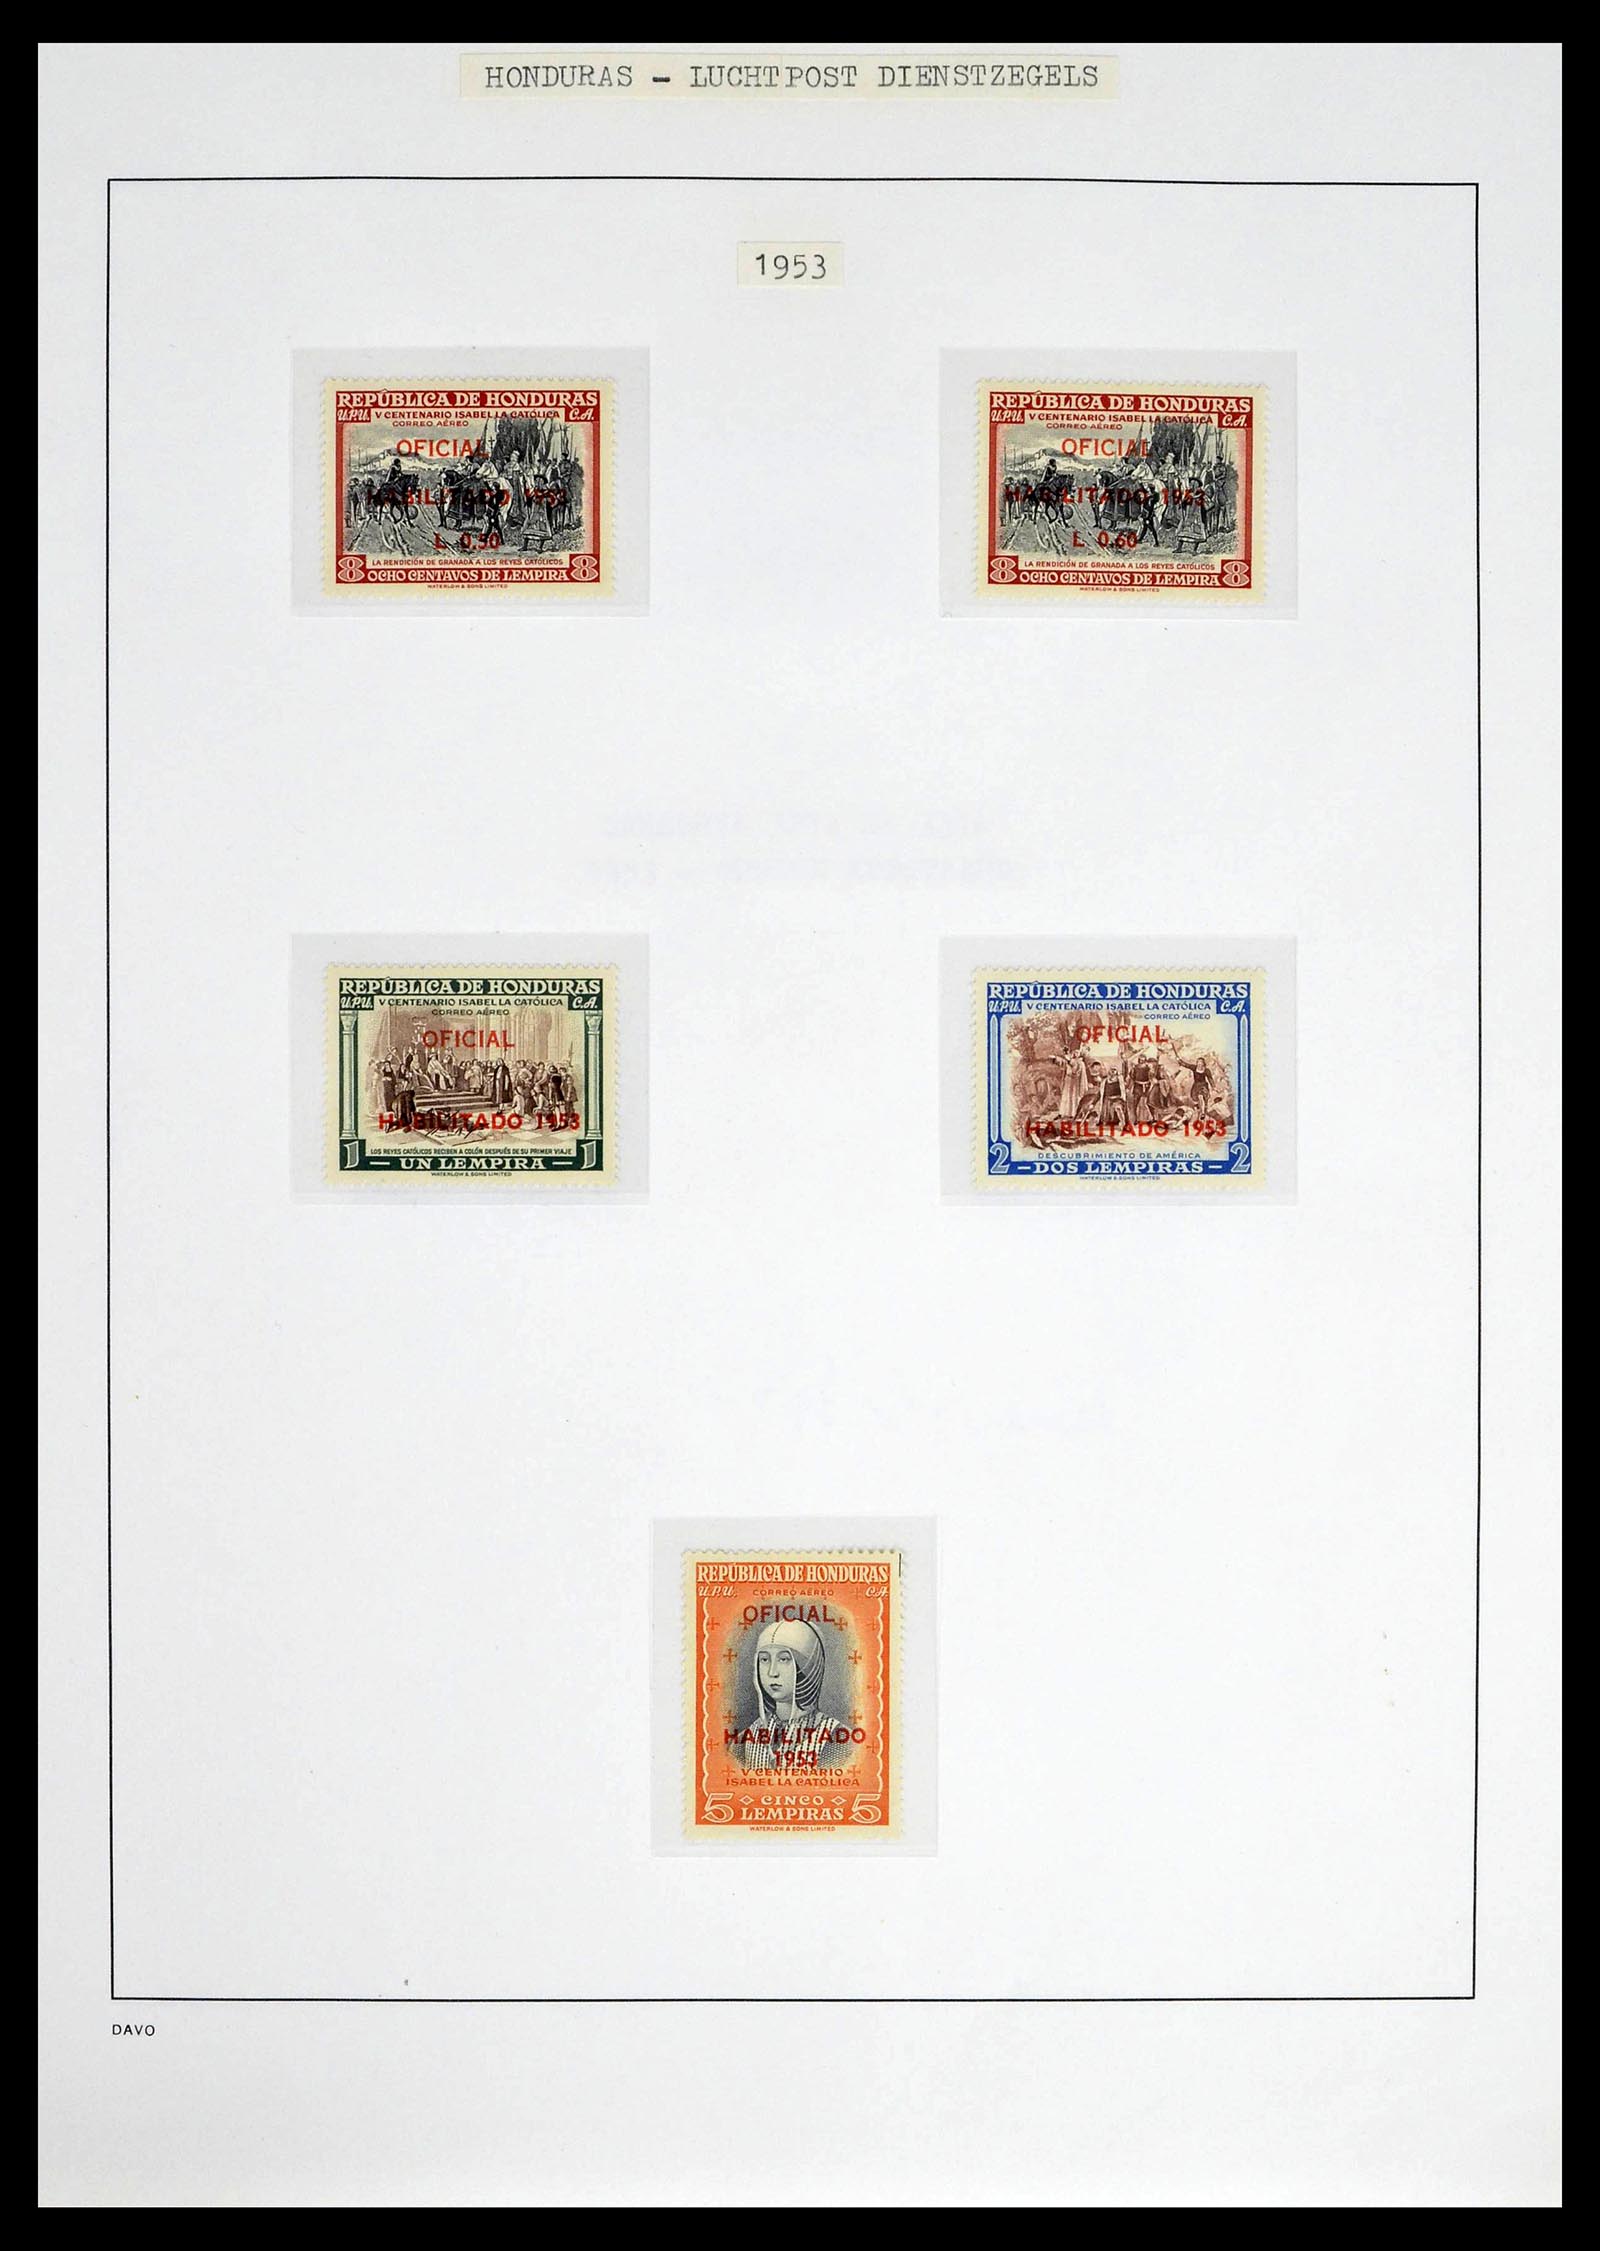 39404 0029 - Postzegelverzameling 39404 Honduras dienstzegels 1890-1974.